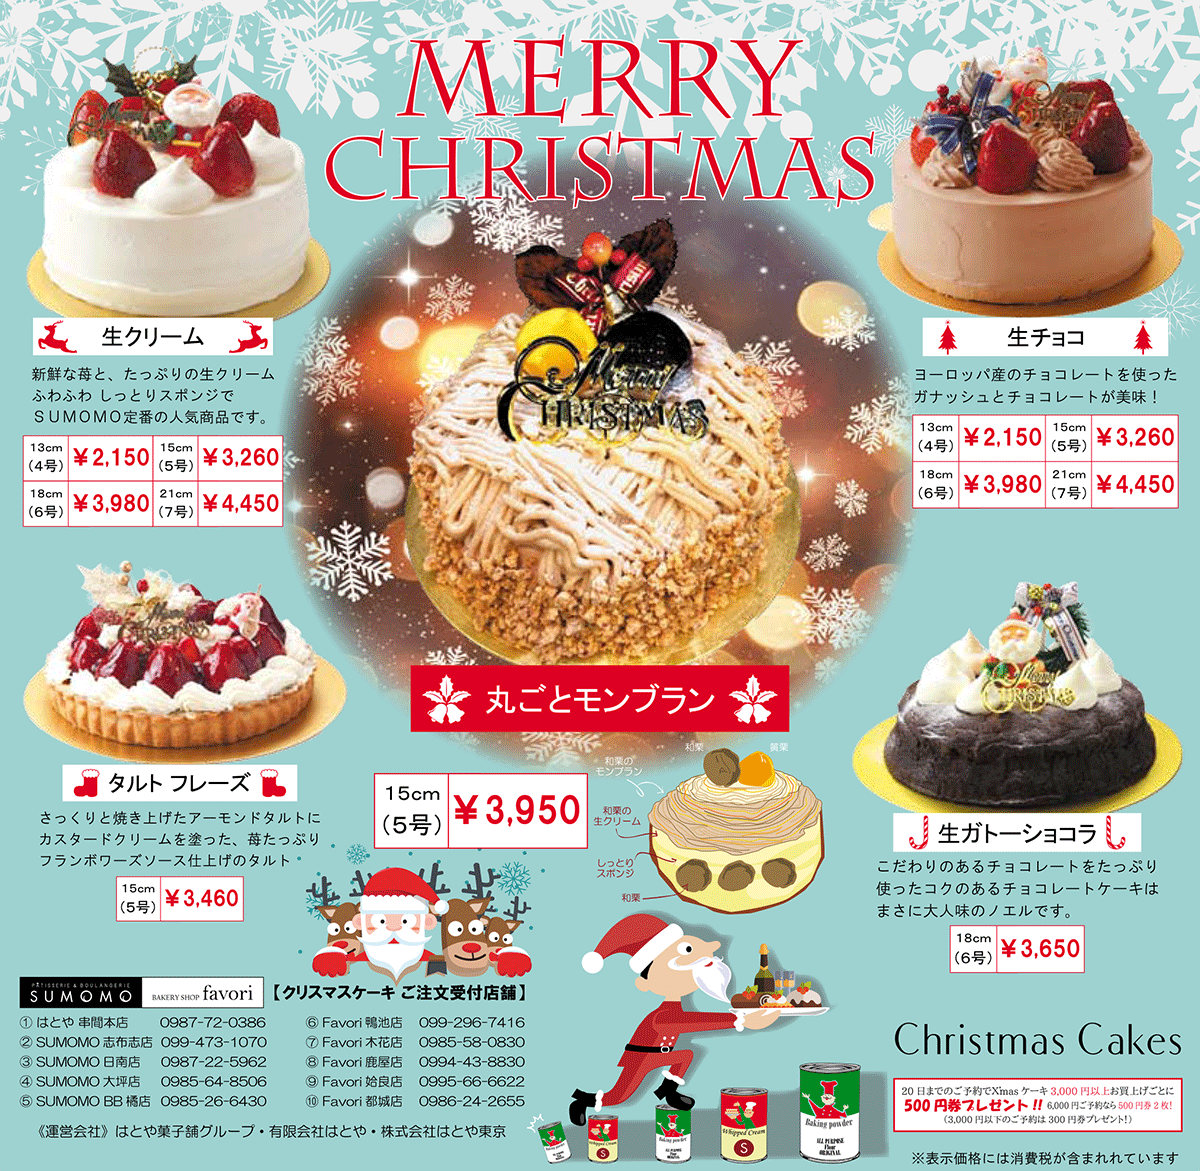 お知らせ クリスマスケーキ17 ご予約のご案内 はとや菓子舗グループ パン ケーキ 和洋菓子